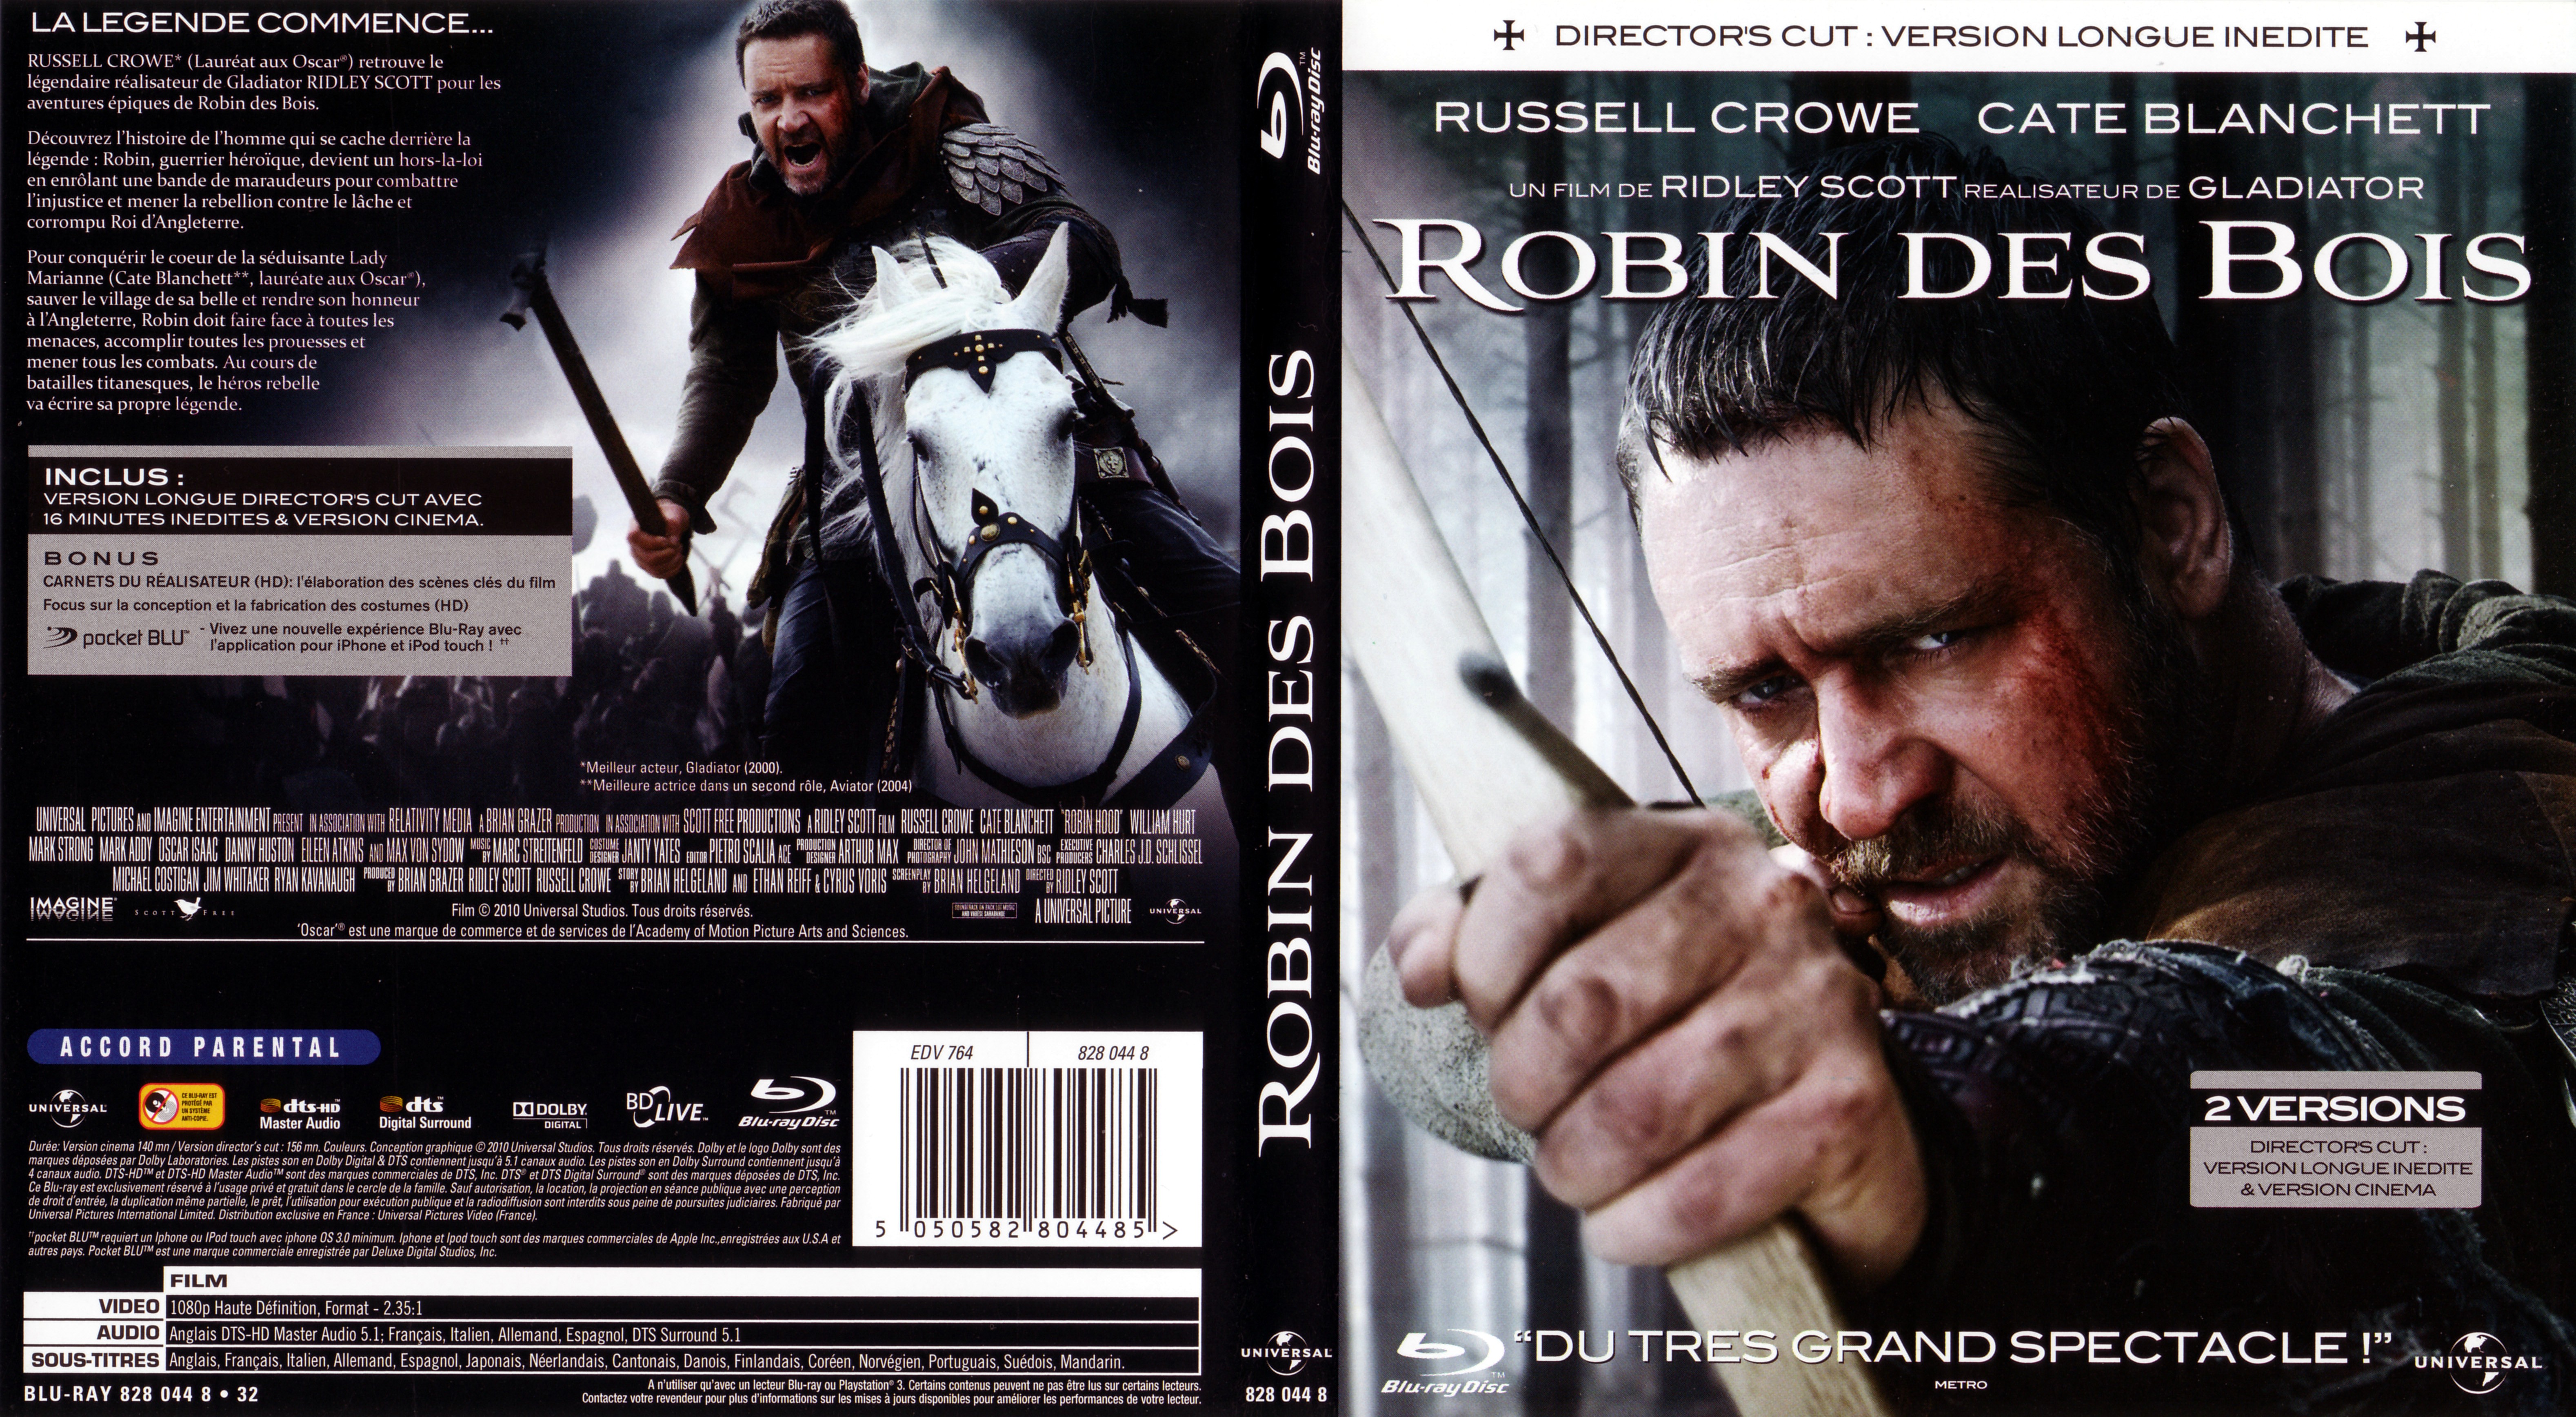 Jaquette DVD Robin des bois (2010) (BLU-RAY) v3